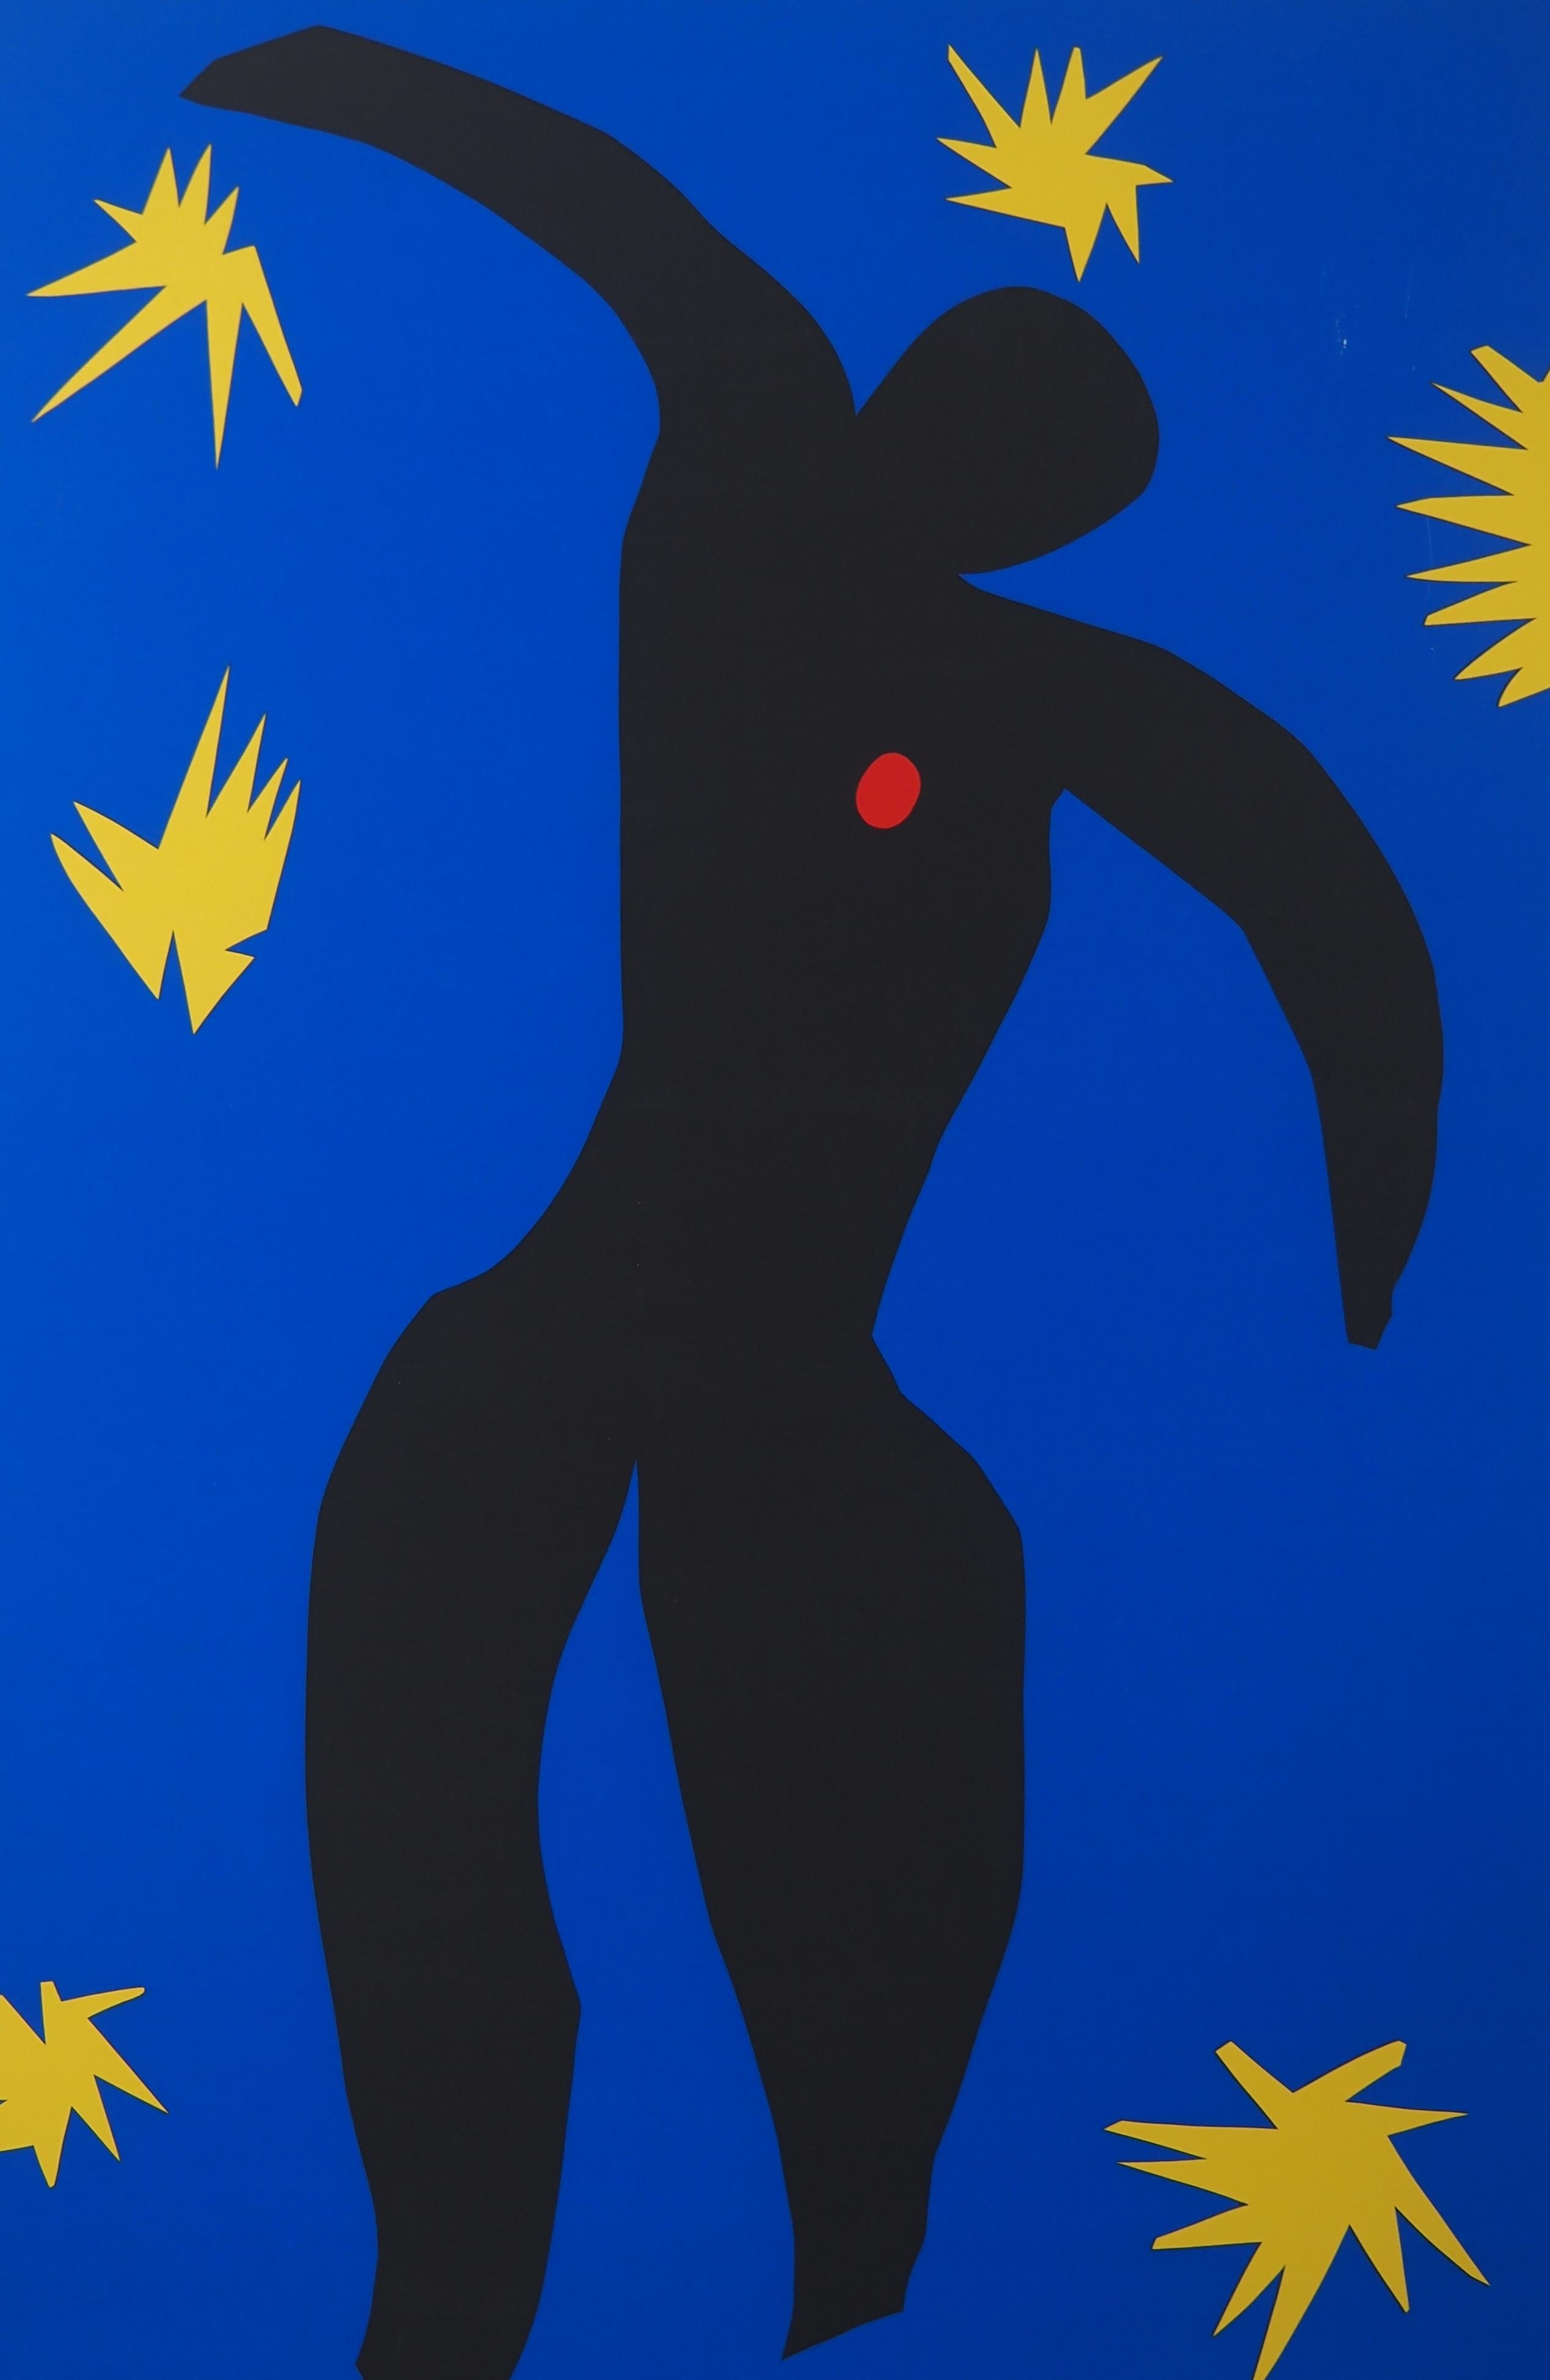 Icarus in the Stars - Siebdruck – Print von Henri Matisse